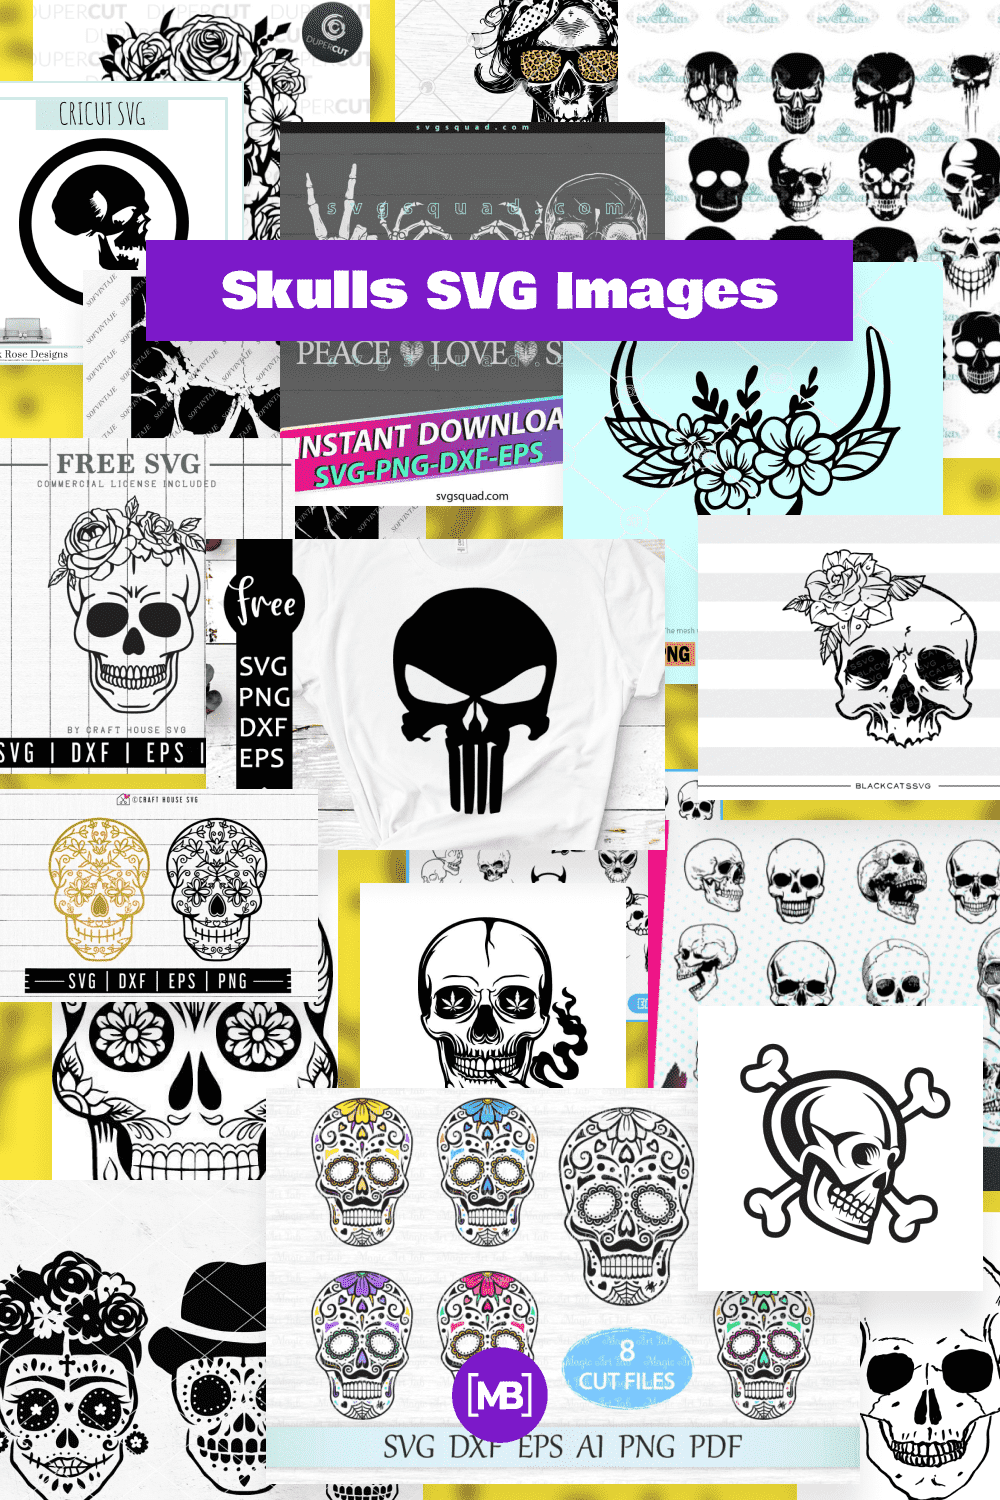 Skulls SVG Images Pinterest.